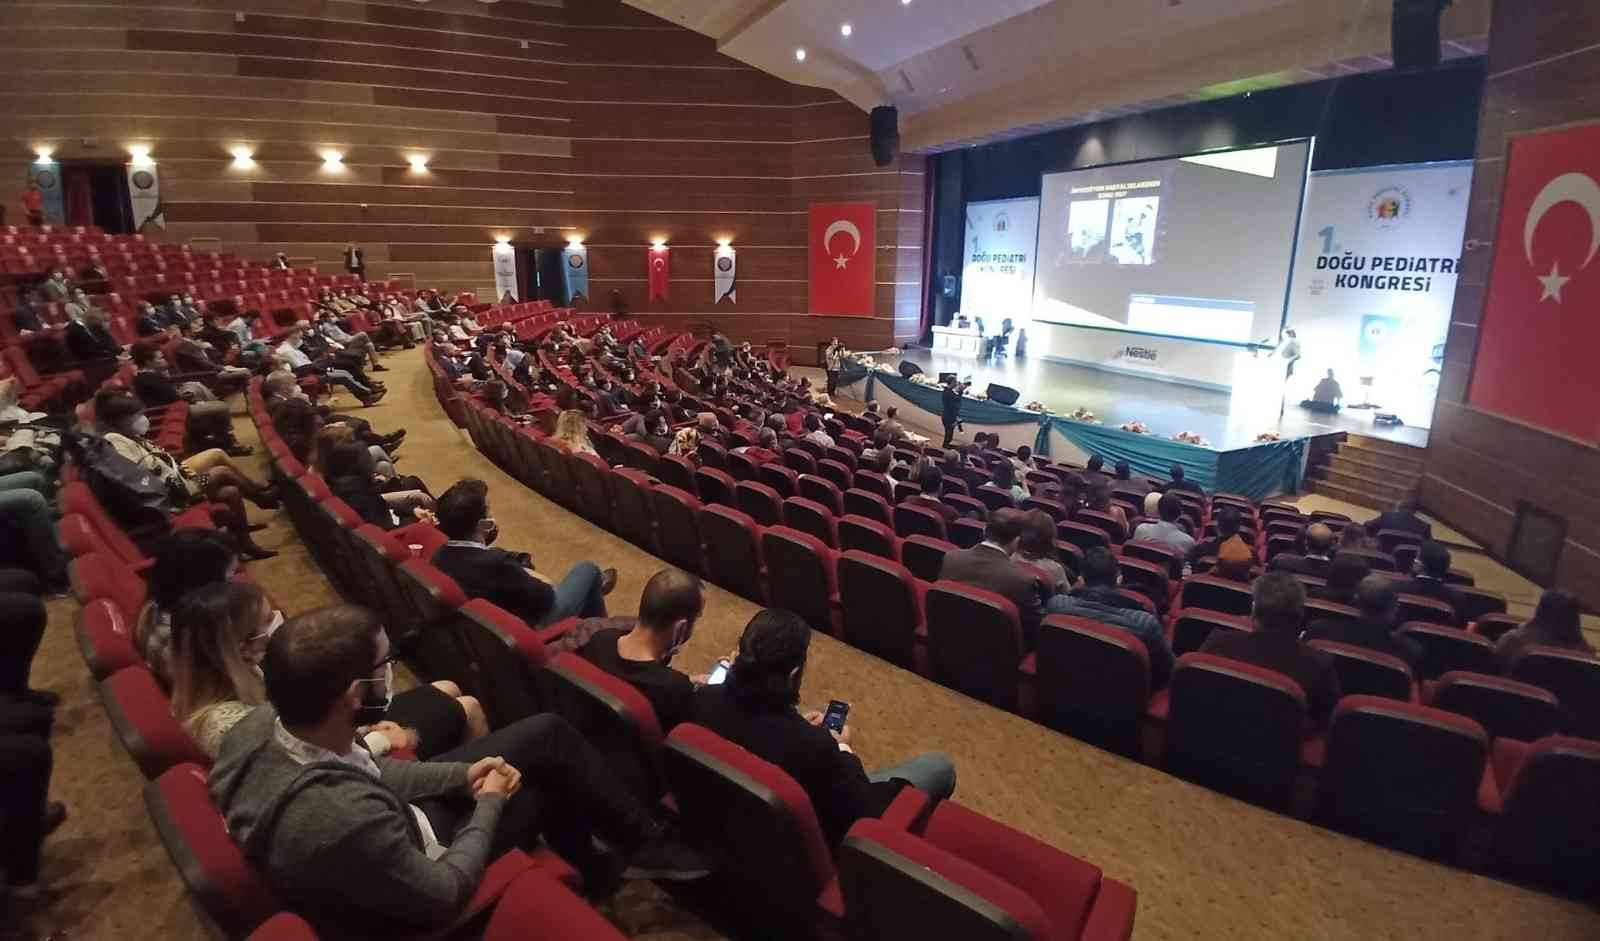 1. Doğu Pediatri Kongresi başladı #diyarbakir